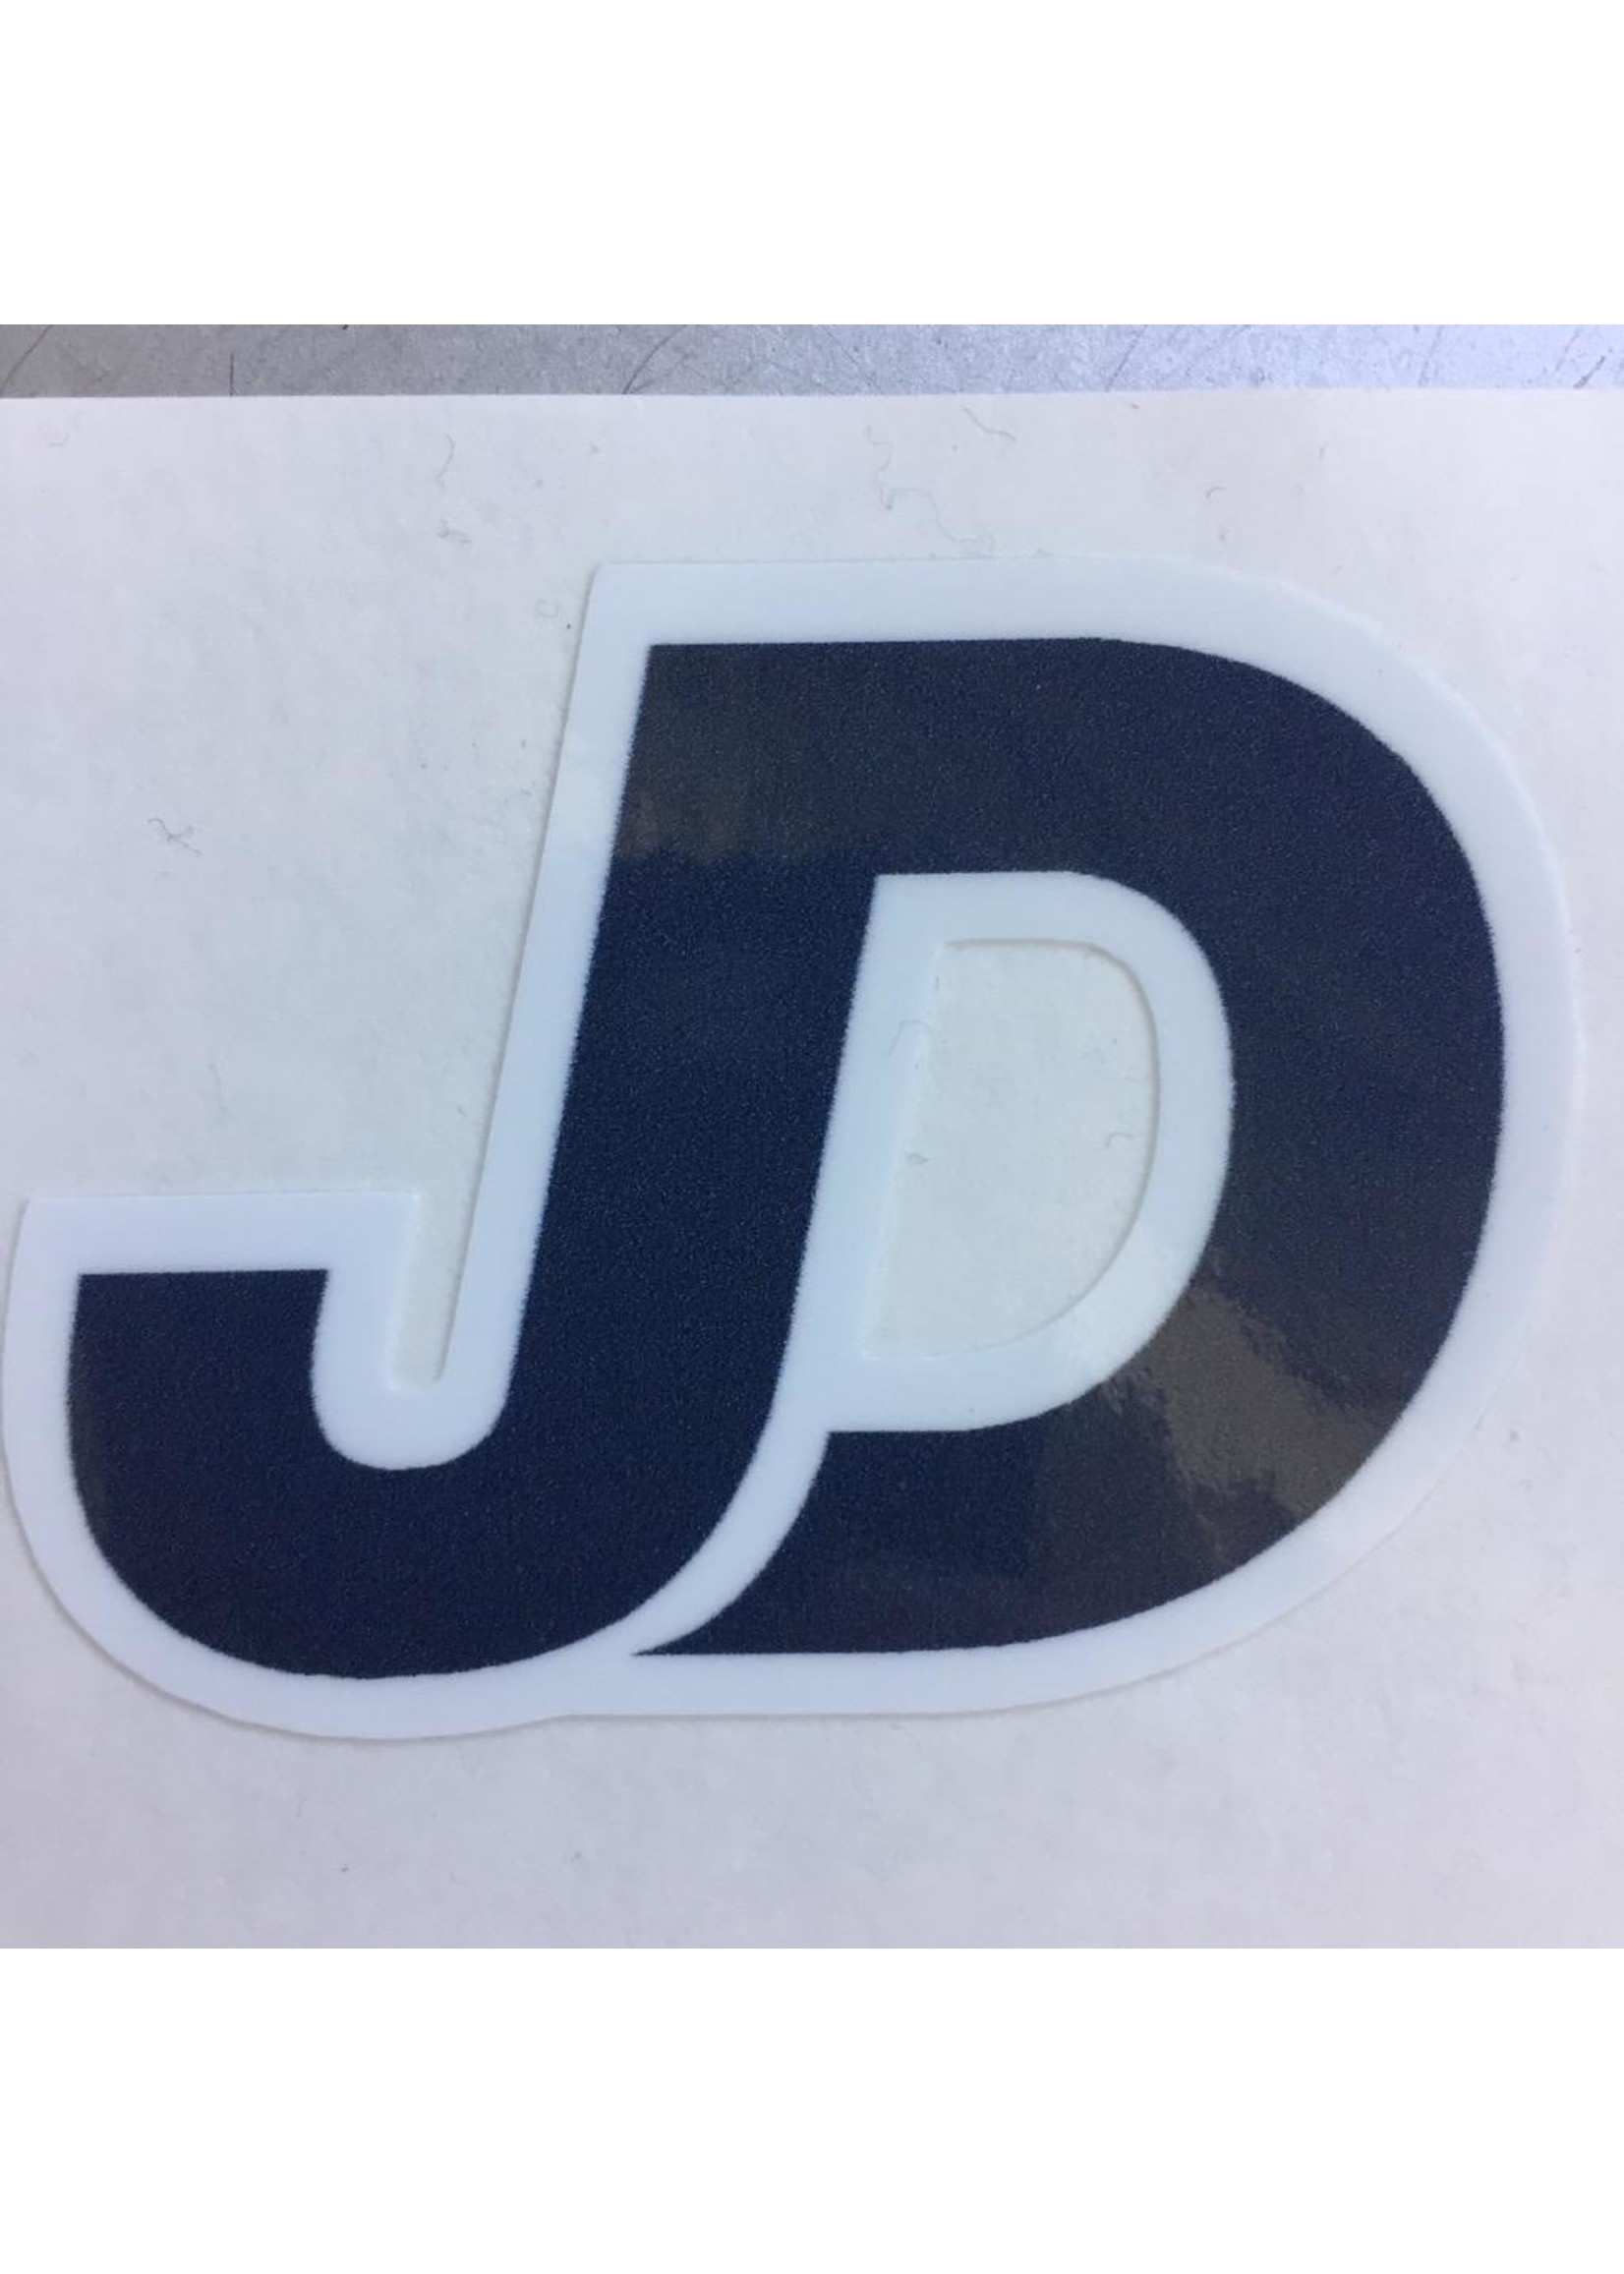 NON-UNIFORM JD Sticker - 2.25”x1.25” JD, navy/white decal